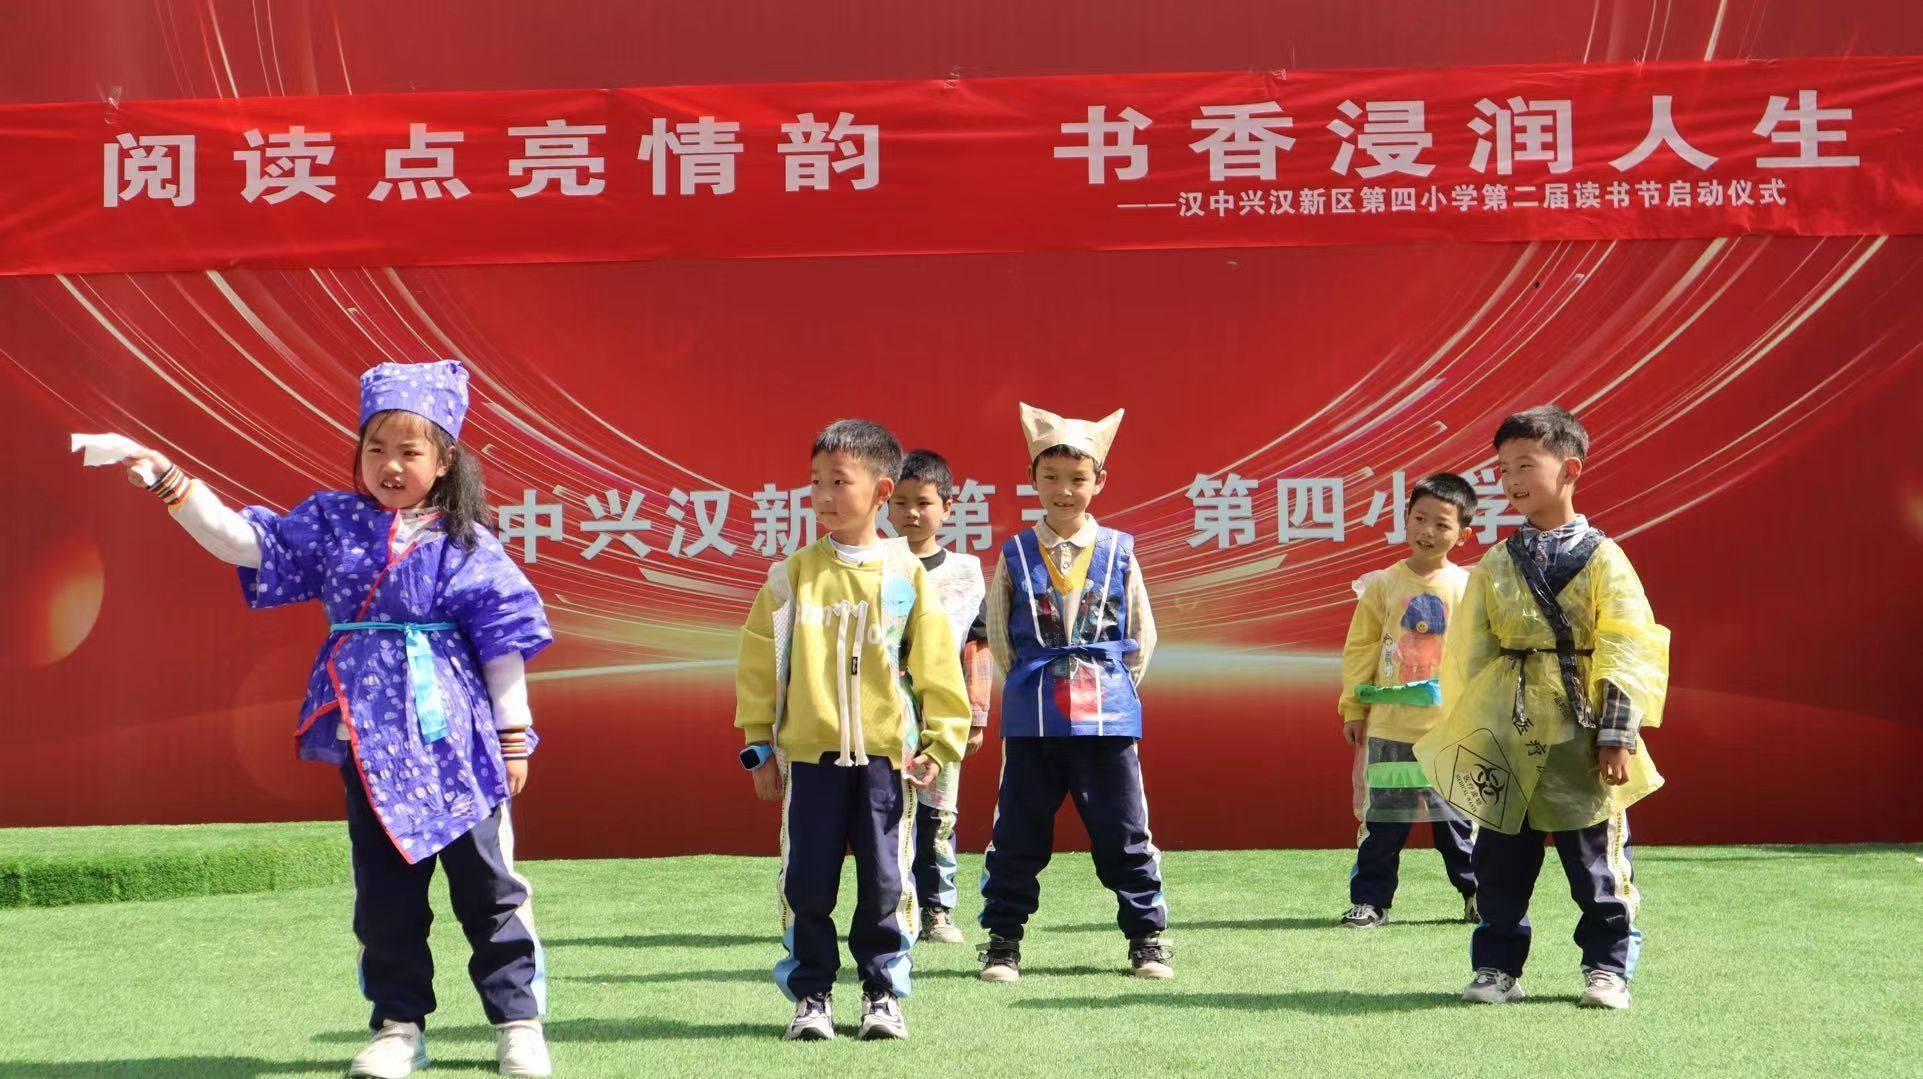 兴汉新区第四小学举办读书节活动